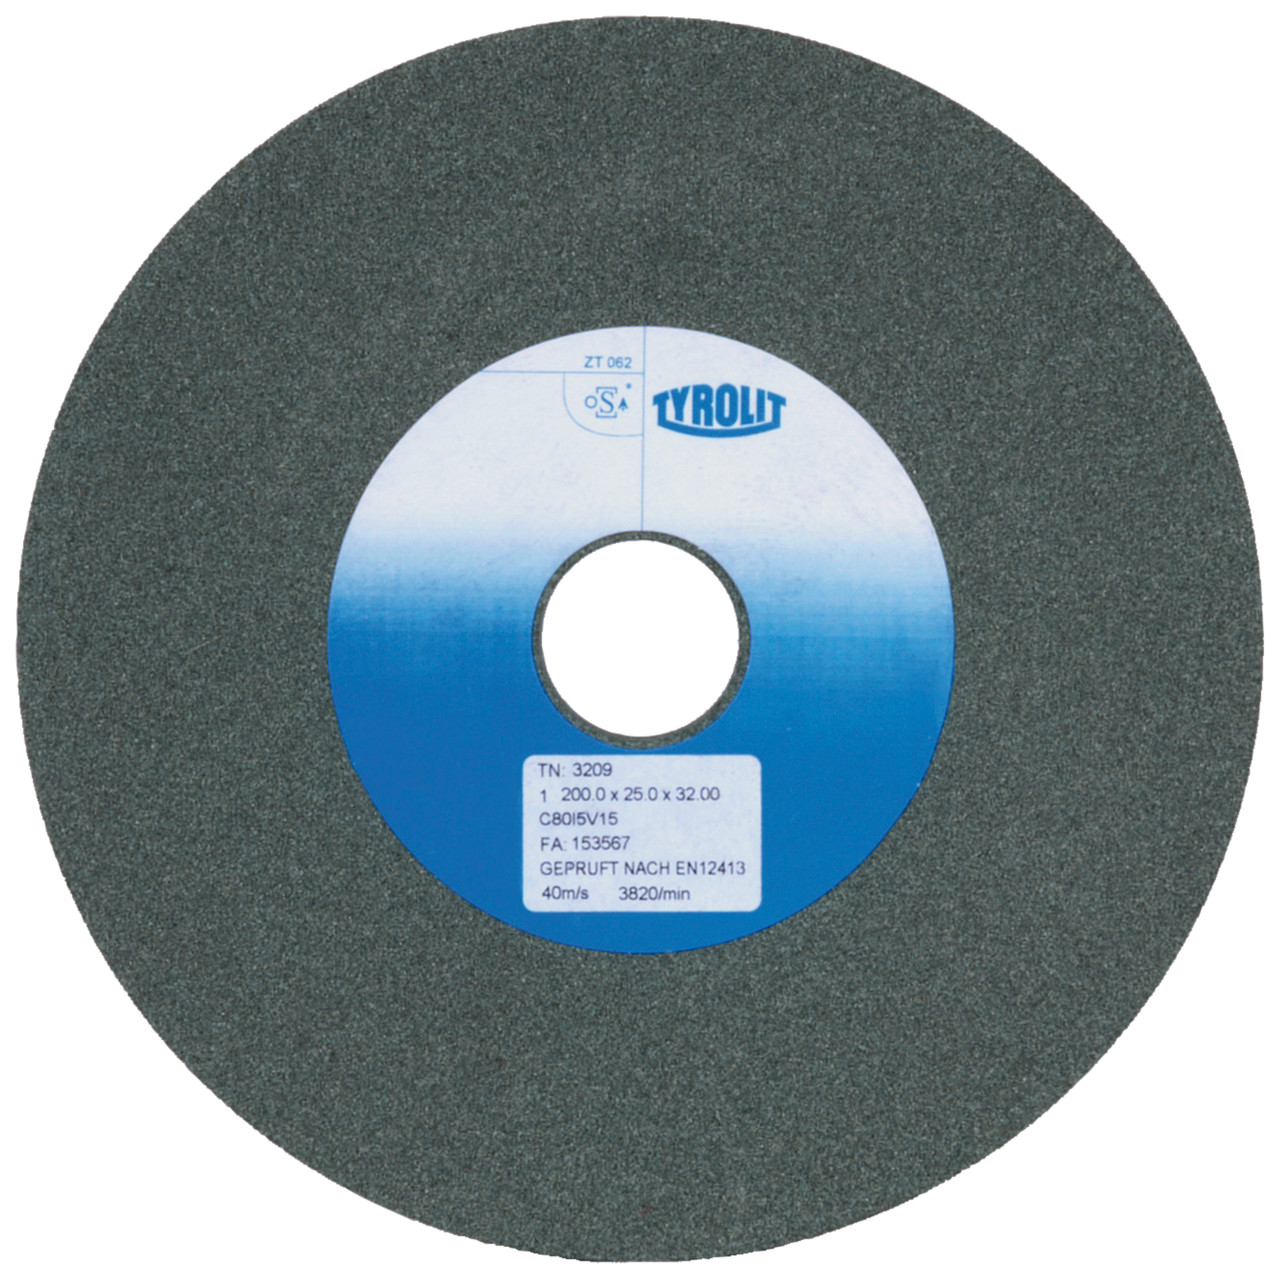 TYROLIT discos abrasivos cerámicos convencionales DxDxH 125x20x32 Para metal duro y fundición, forma: 1, Art. 2529